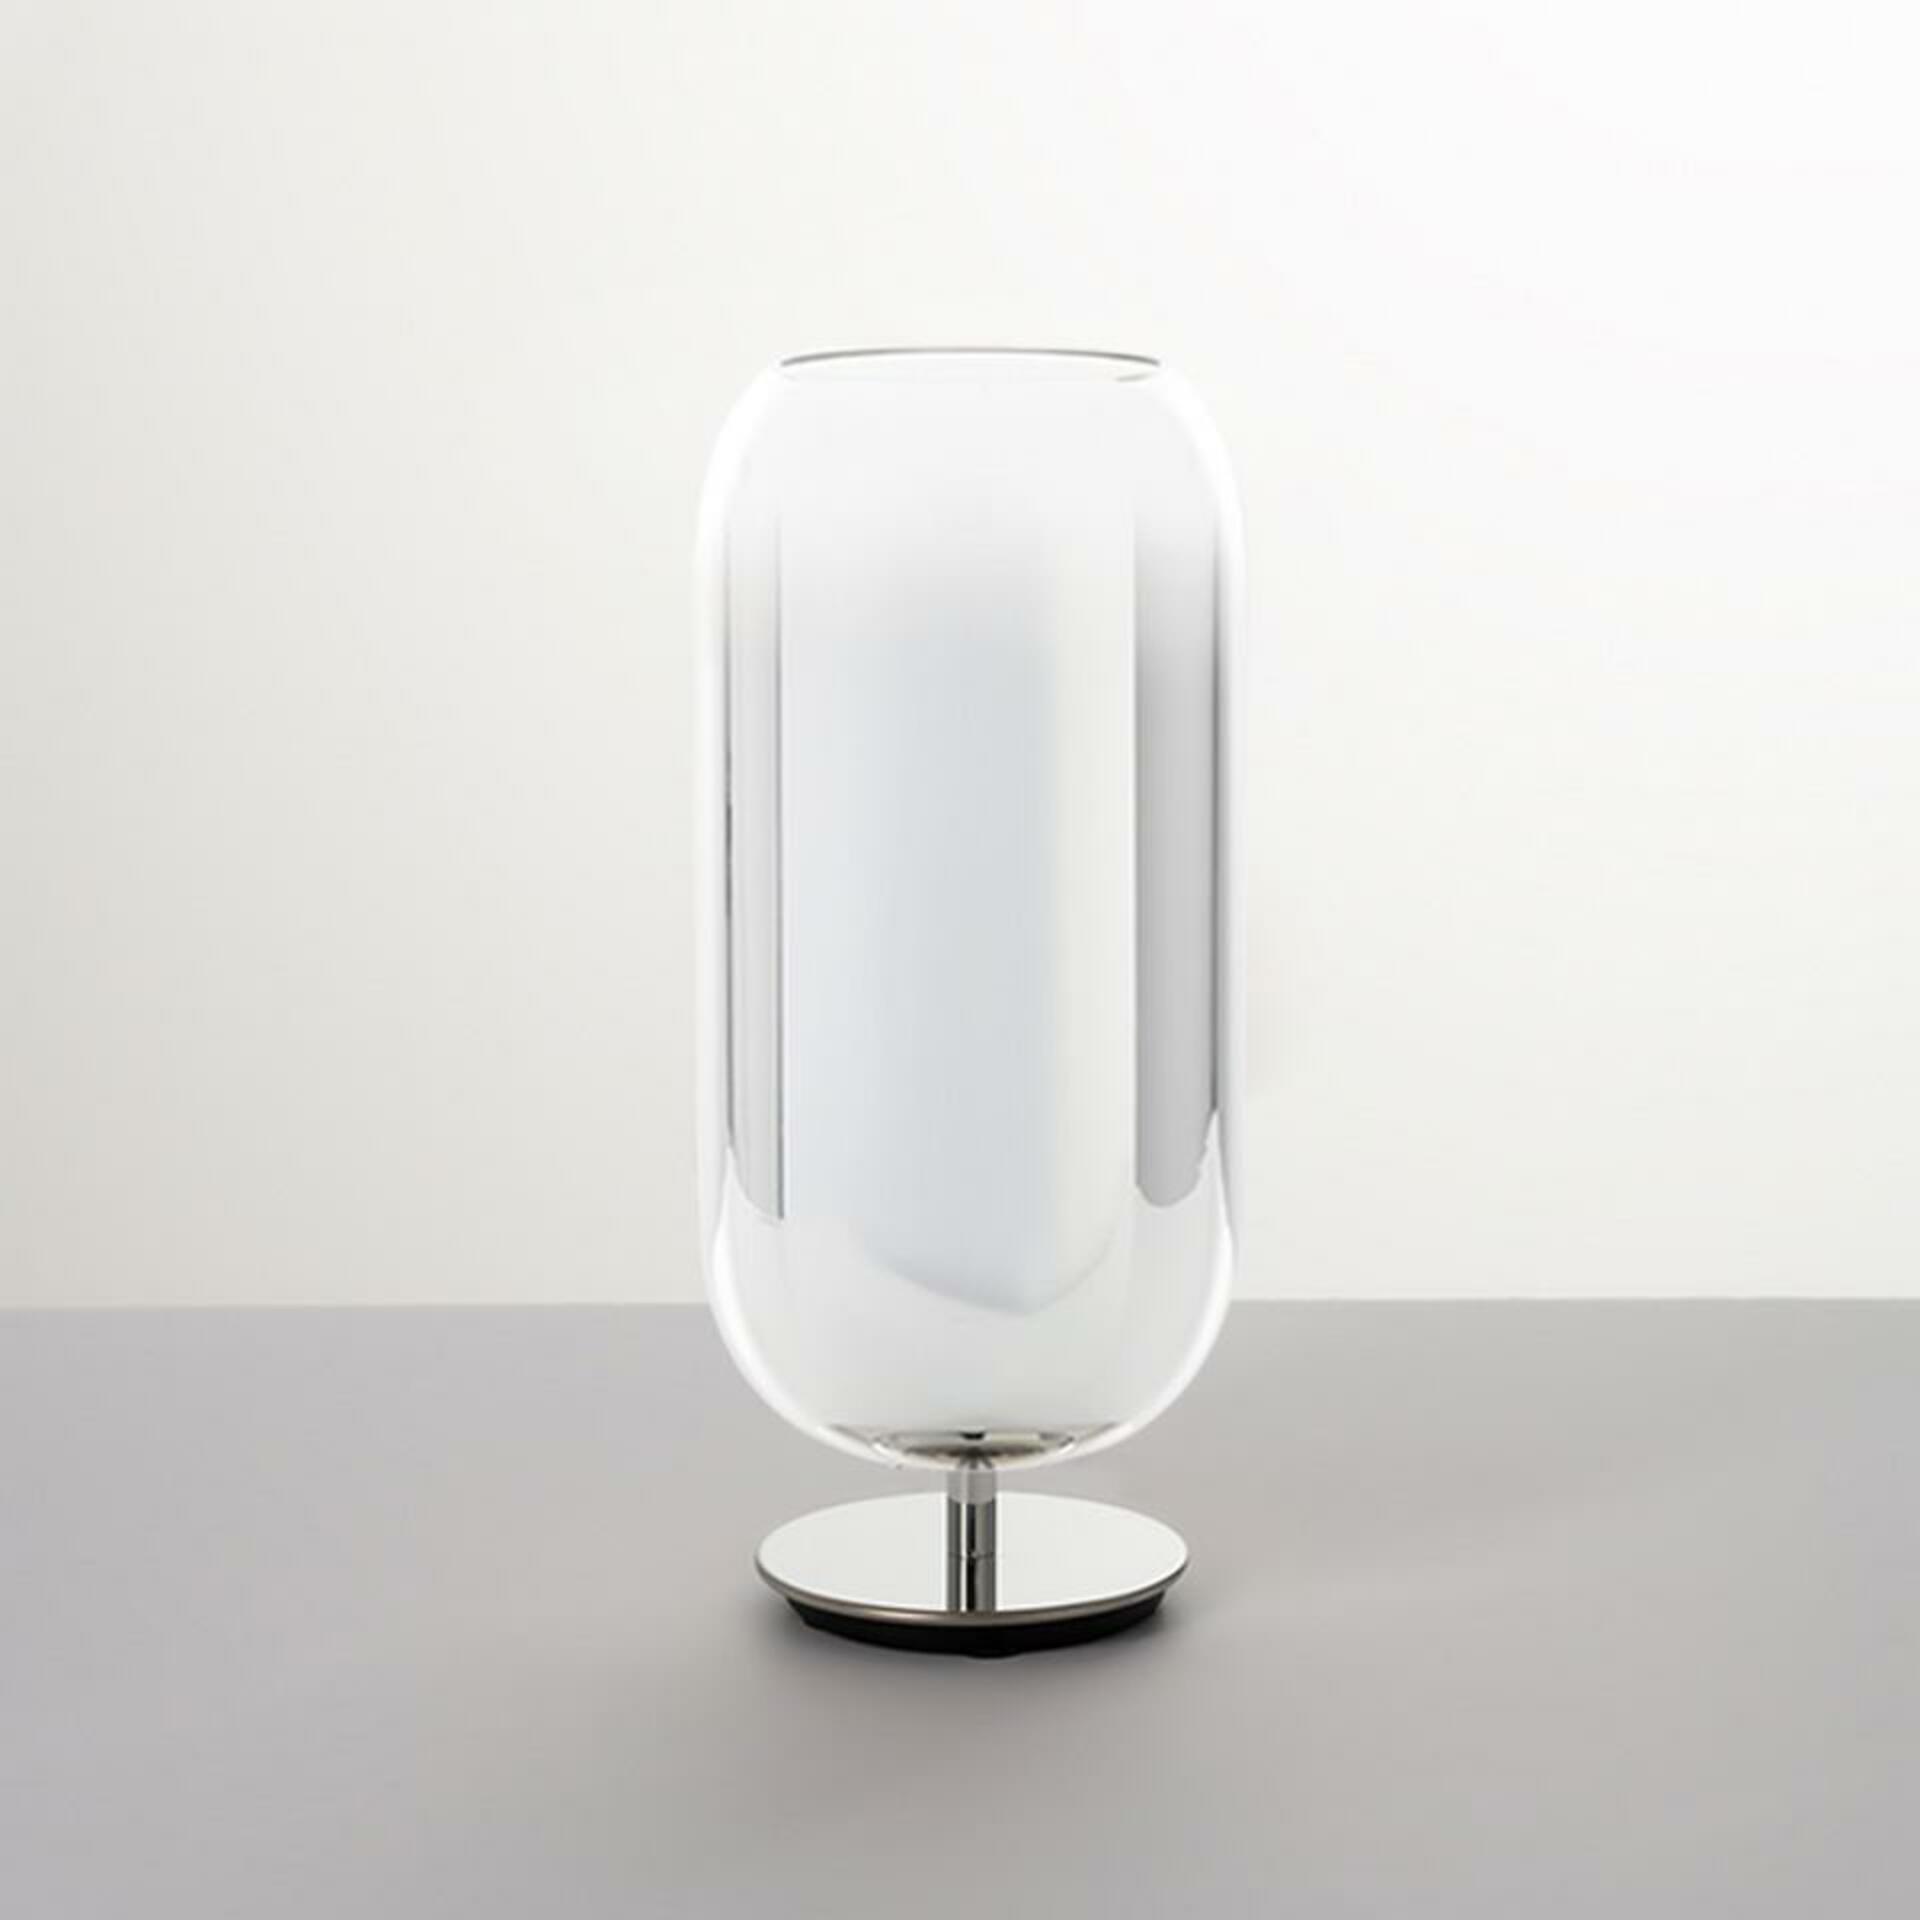 Artemide Gople stolní lampa - stříbrná 1408010A